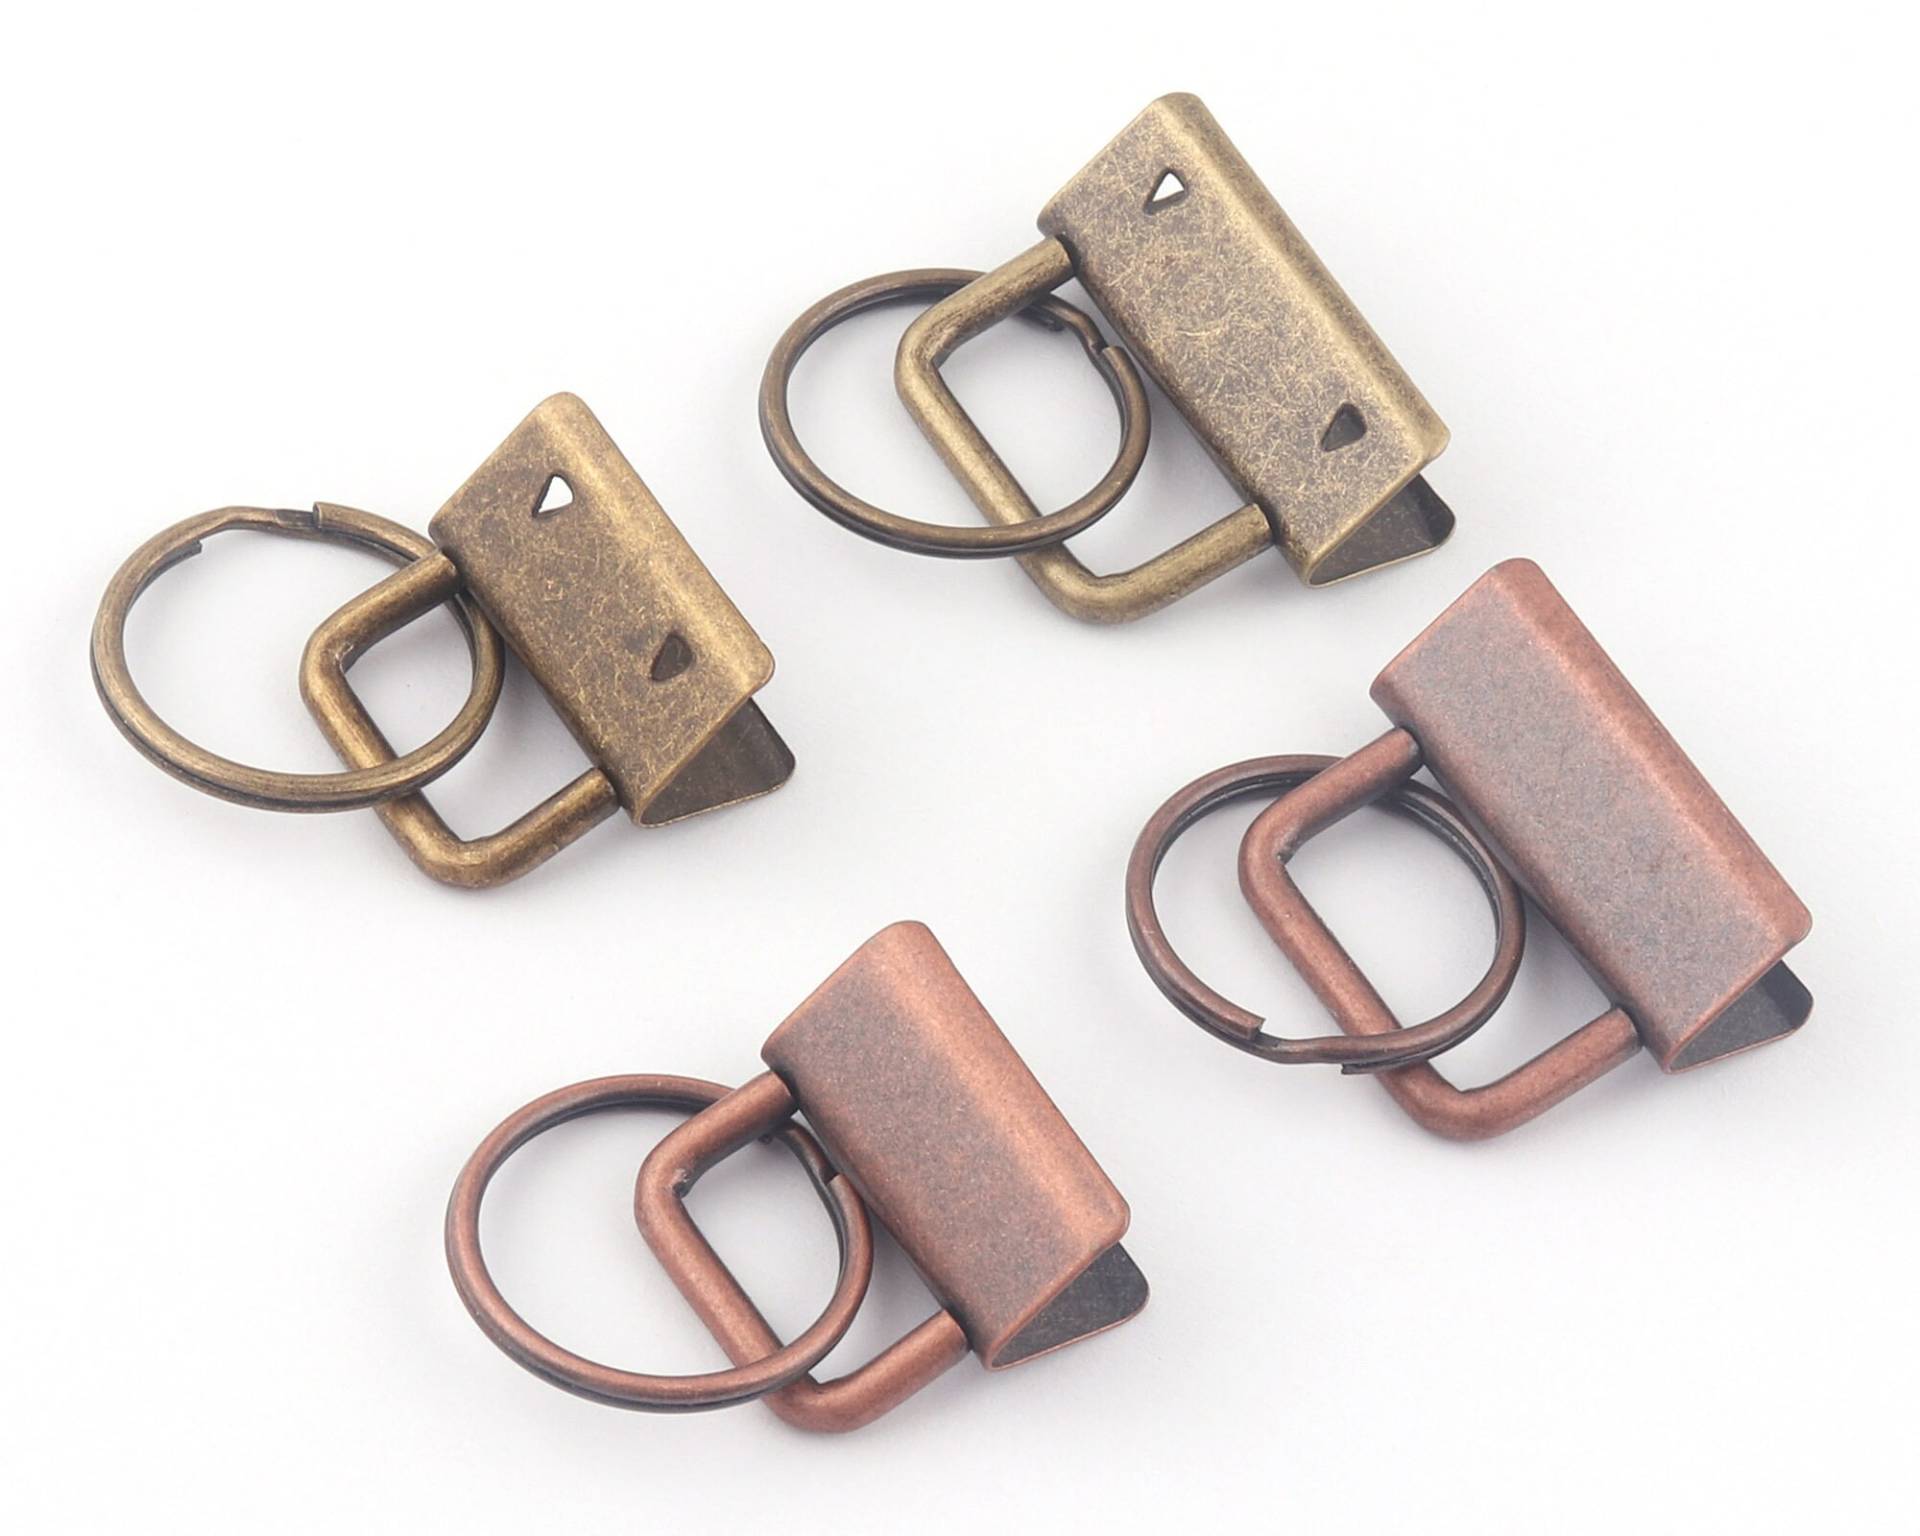 25/32mm Kupfer Metall Schlüsselanhänger Hardware Mit Schlüssel Ringe Sets Schlüsselbund Für Riemen Und Schlüsselbänder Gurtband Wristlets von LeatherWorldcraft